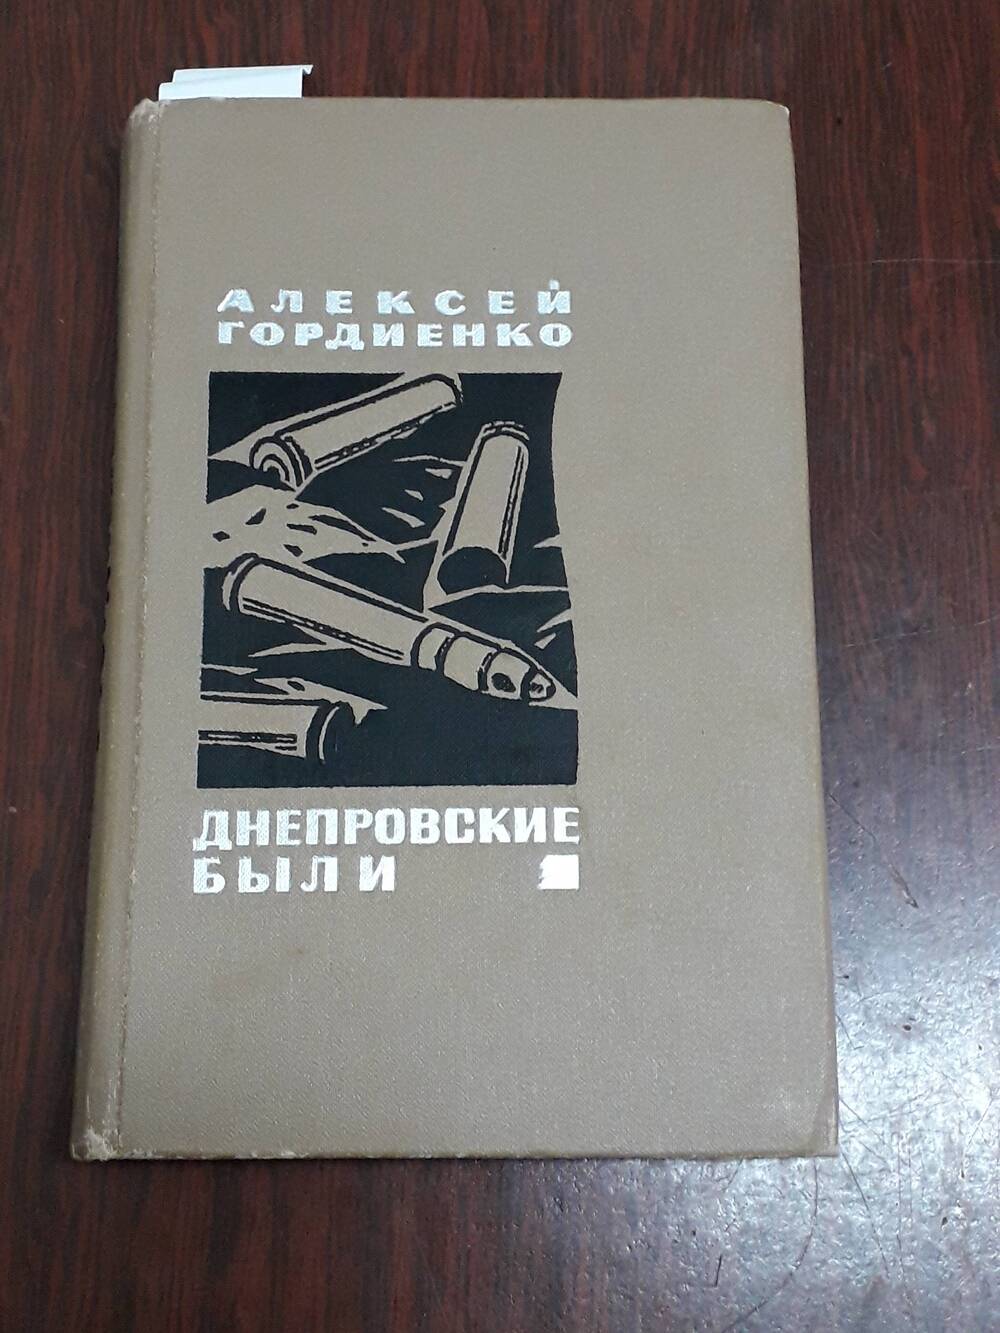 Книга   «Днепровские были»